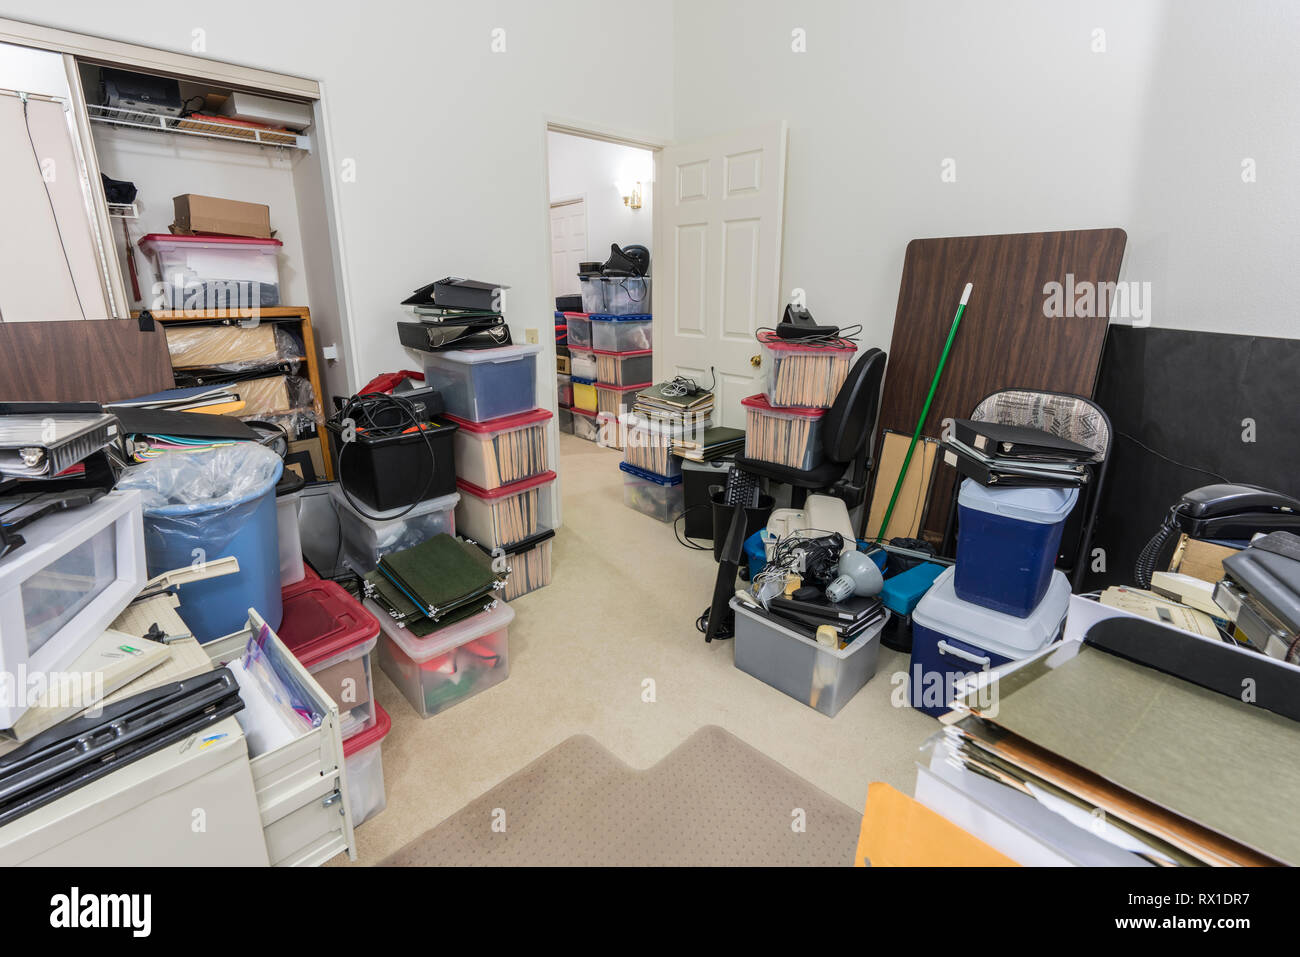 Unordentliche back office mit Kästen, Unordnung, alte Geräte und Lagerungen. Stockfoto